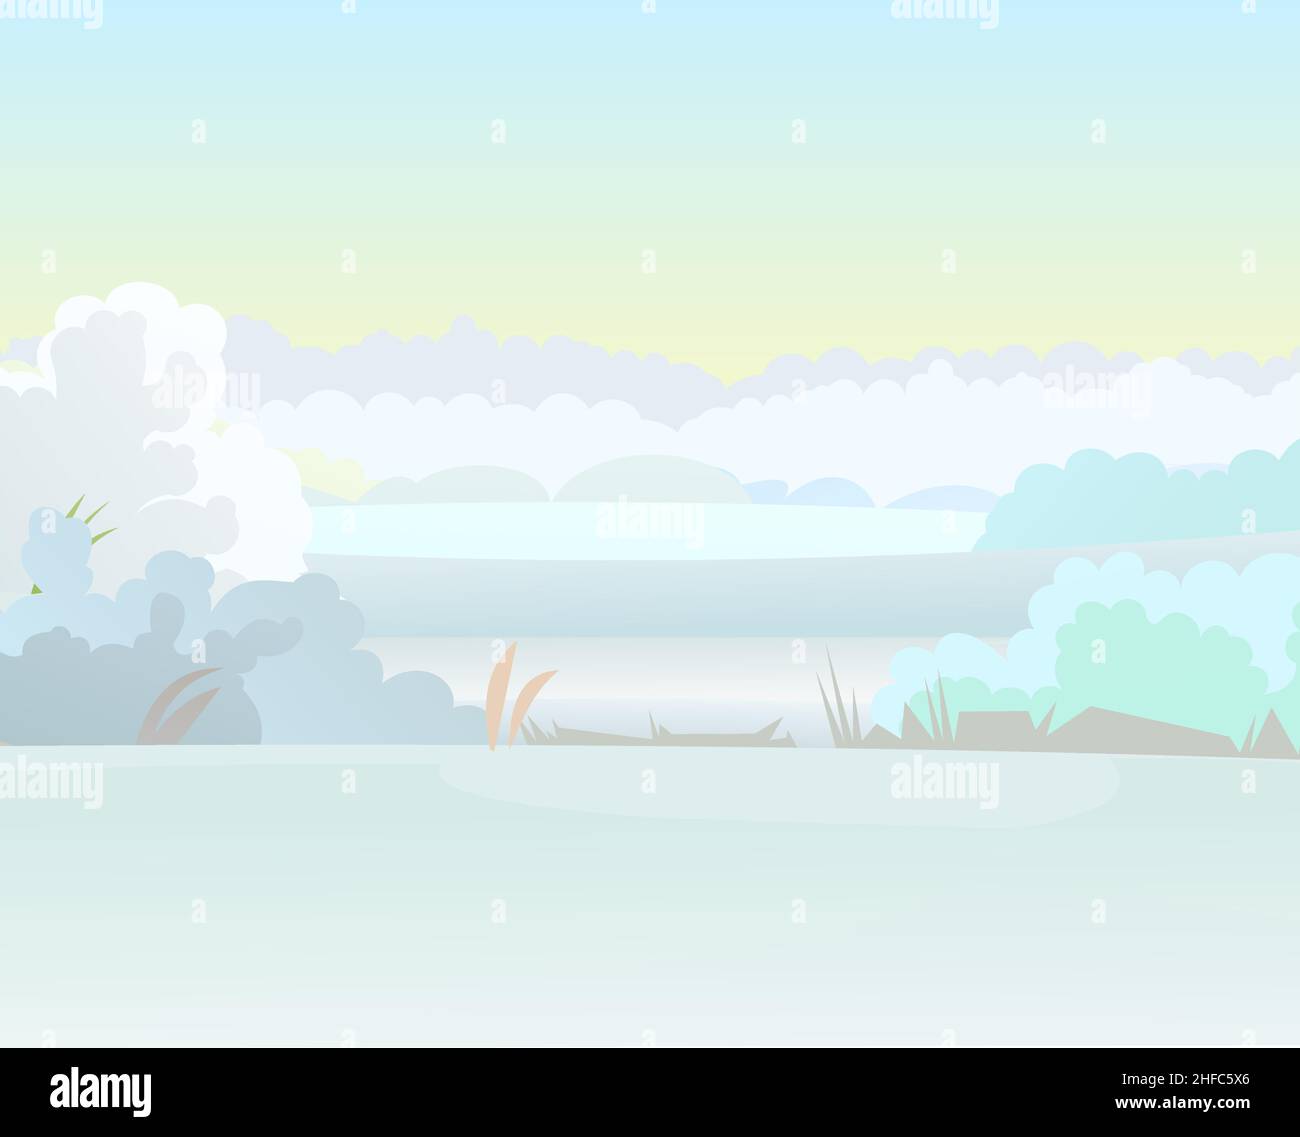 Winter ländliche Landschaft mit kaltem weißen Schnee und Drifts. Wunderschöne frostige Aussicht auf hügelige Landschaft. Flaches Design im Cartoon-Stil. Vordersitze. Stock Vektor